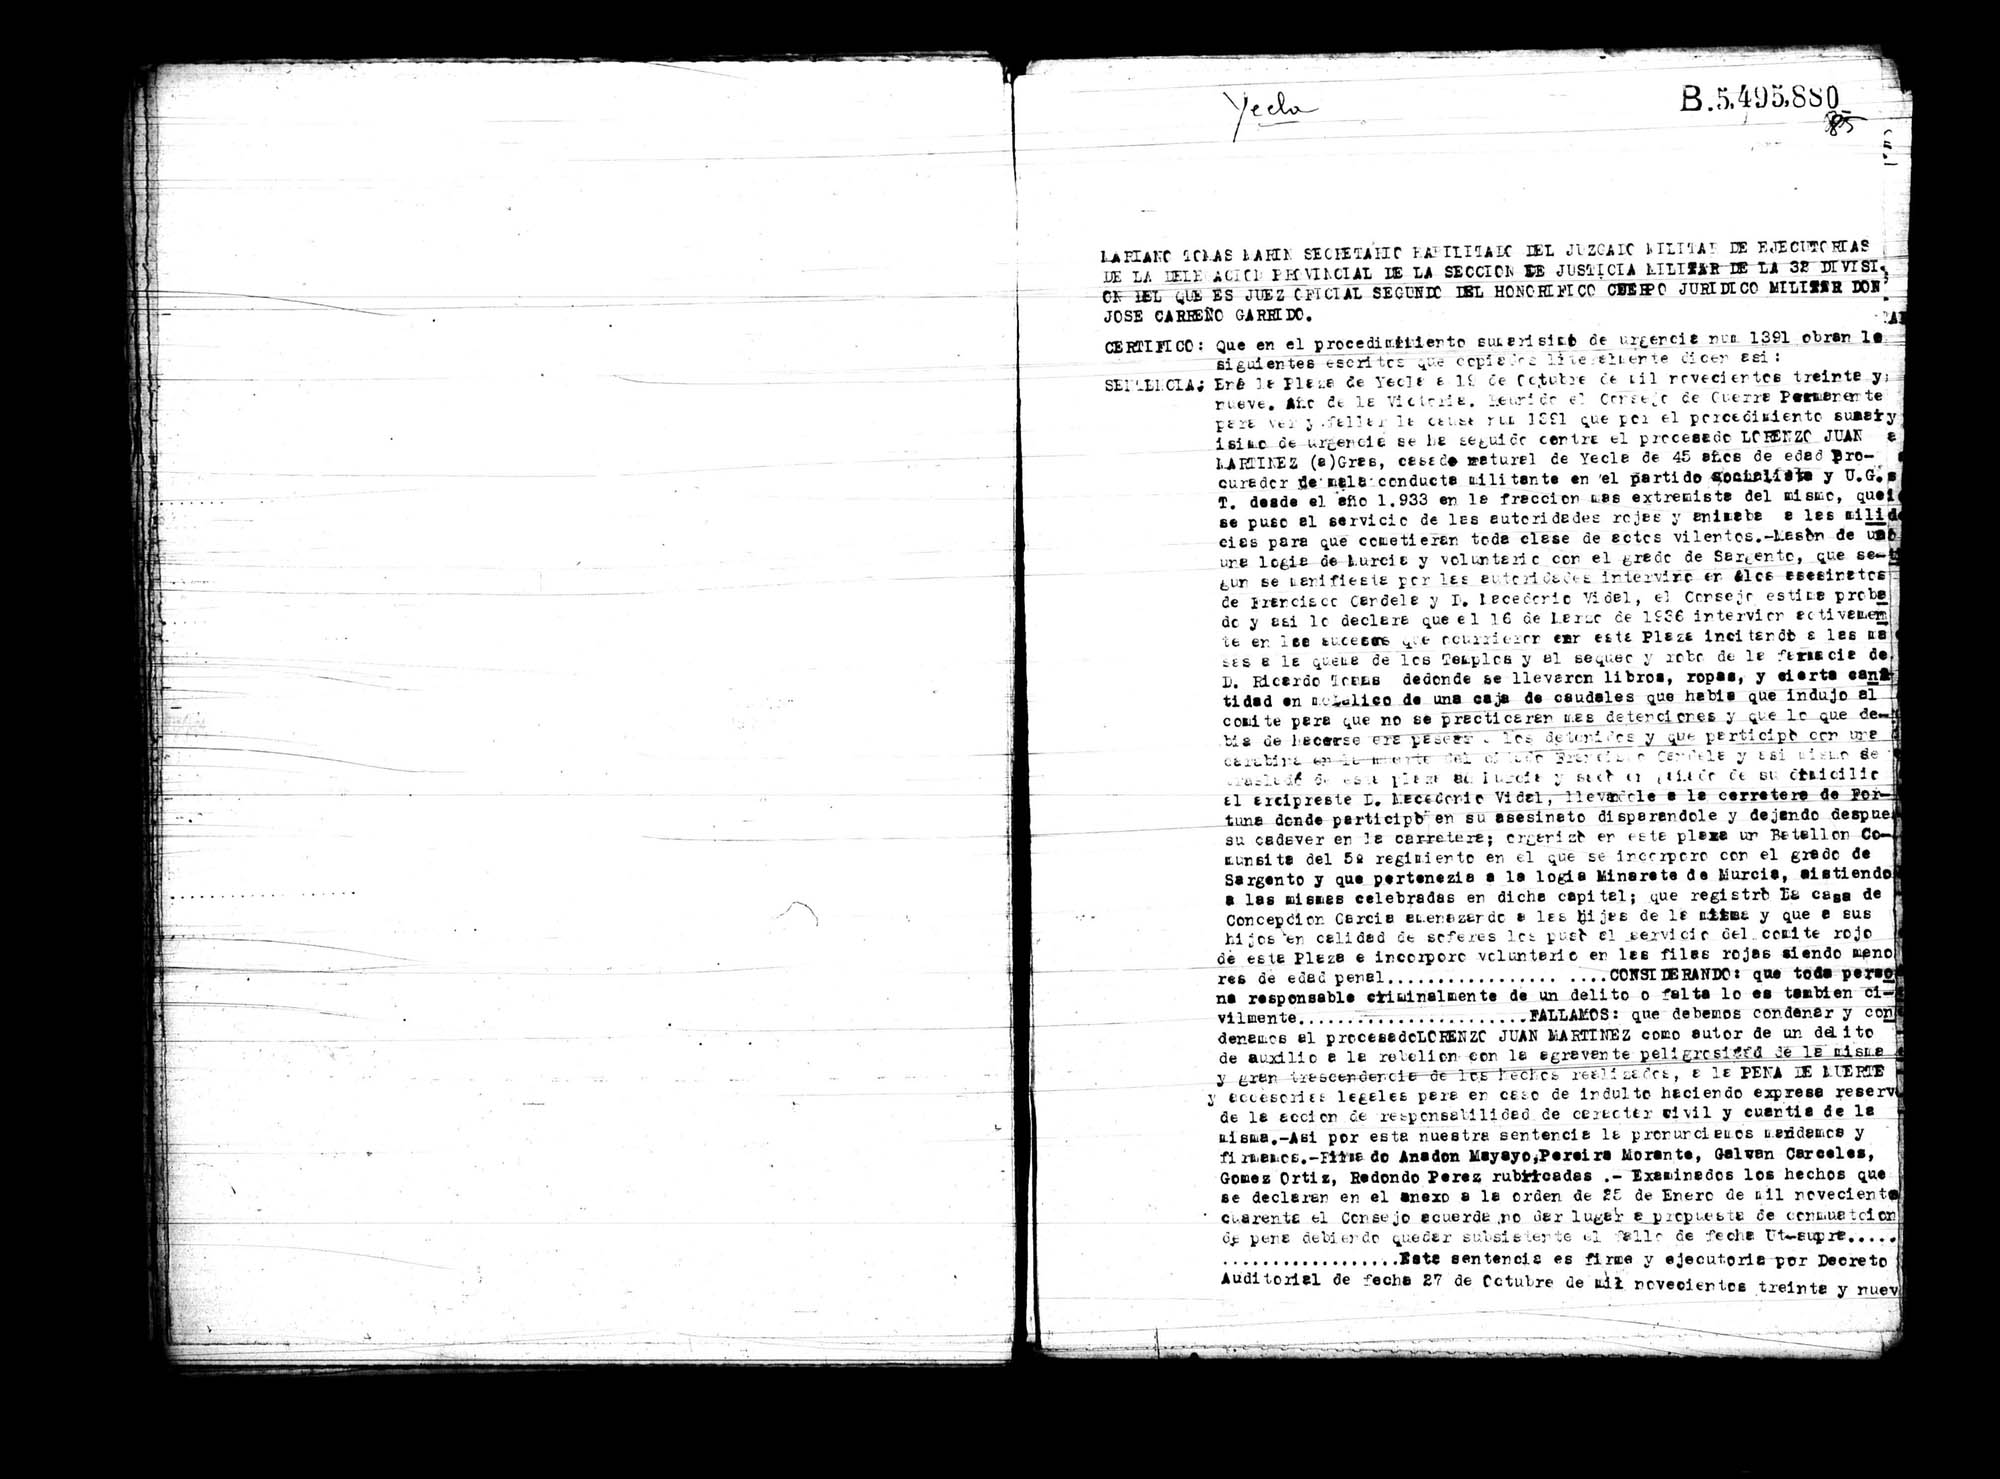 Certificado de la sentencia pronunciada contra Lorenzo Juan Martínez Gras, causa 1391, el 19 de octubre de 1939 en Yecla.